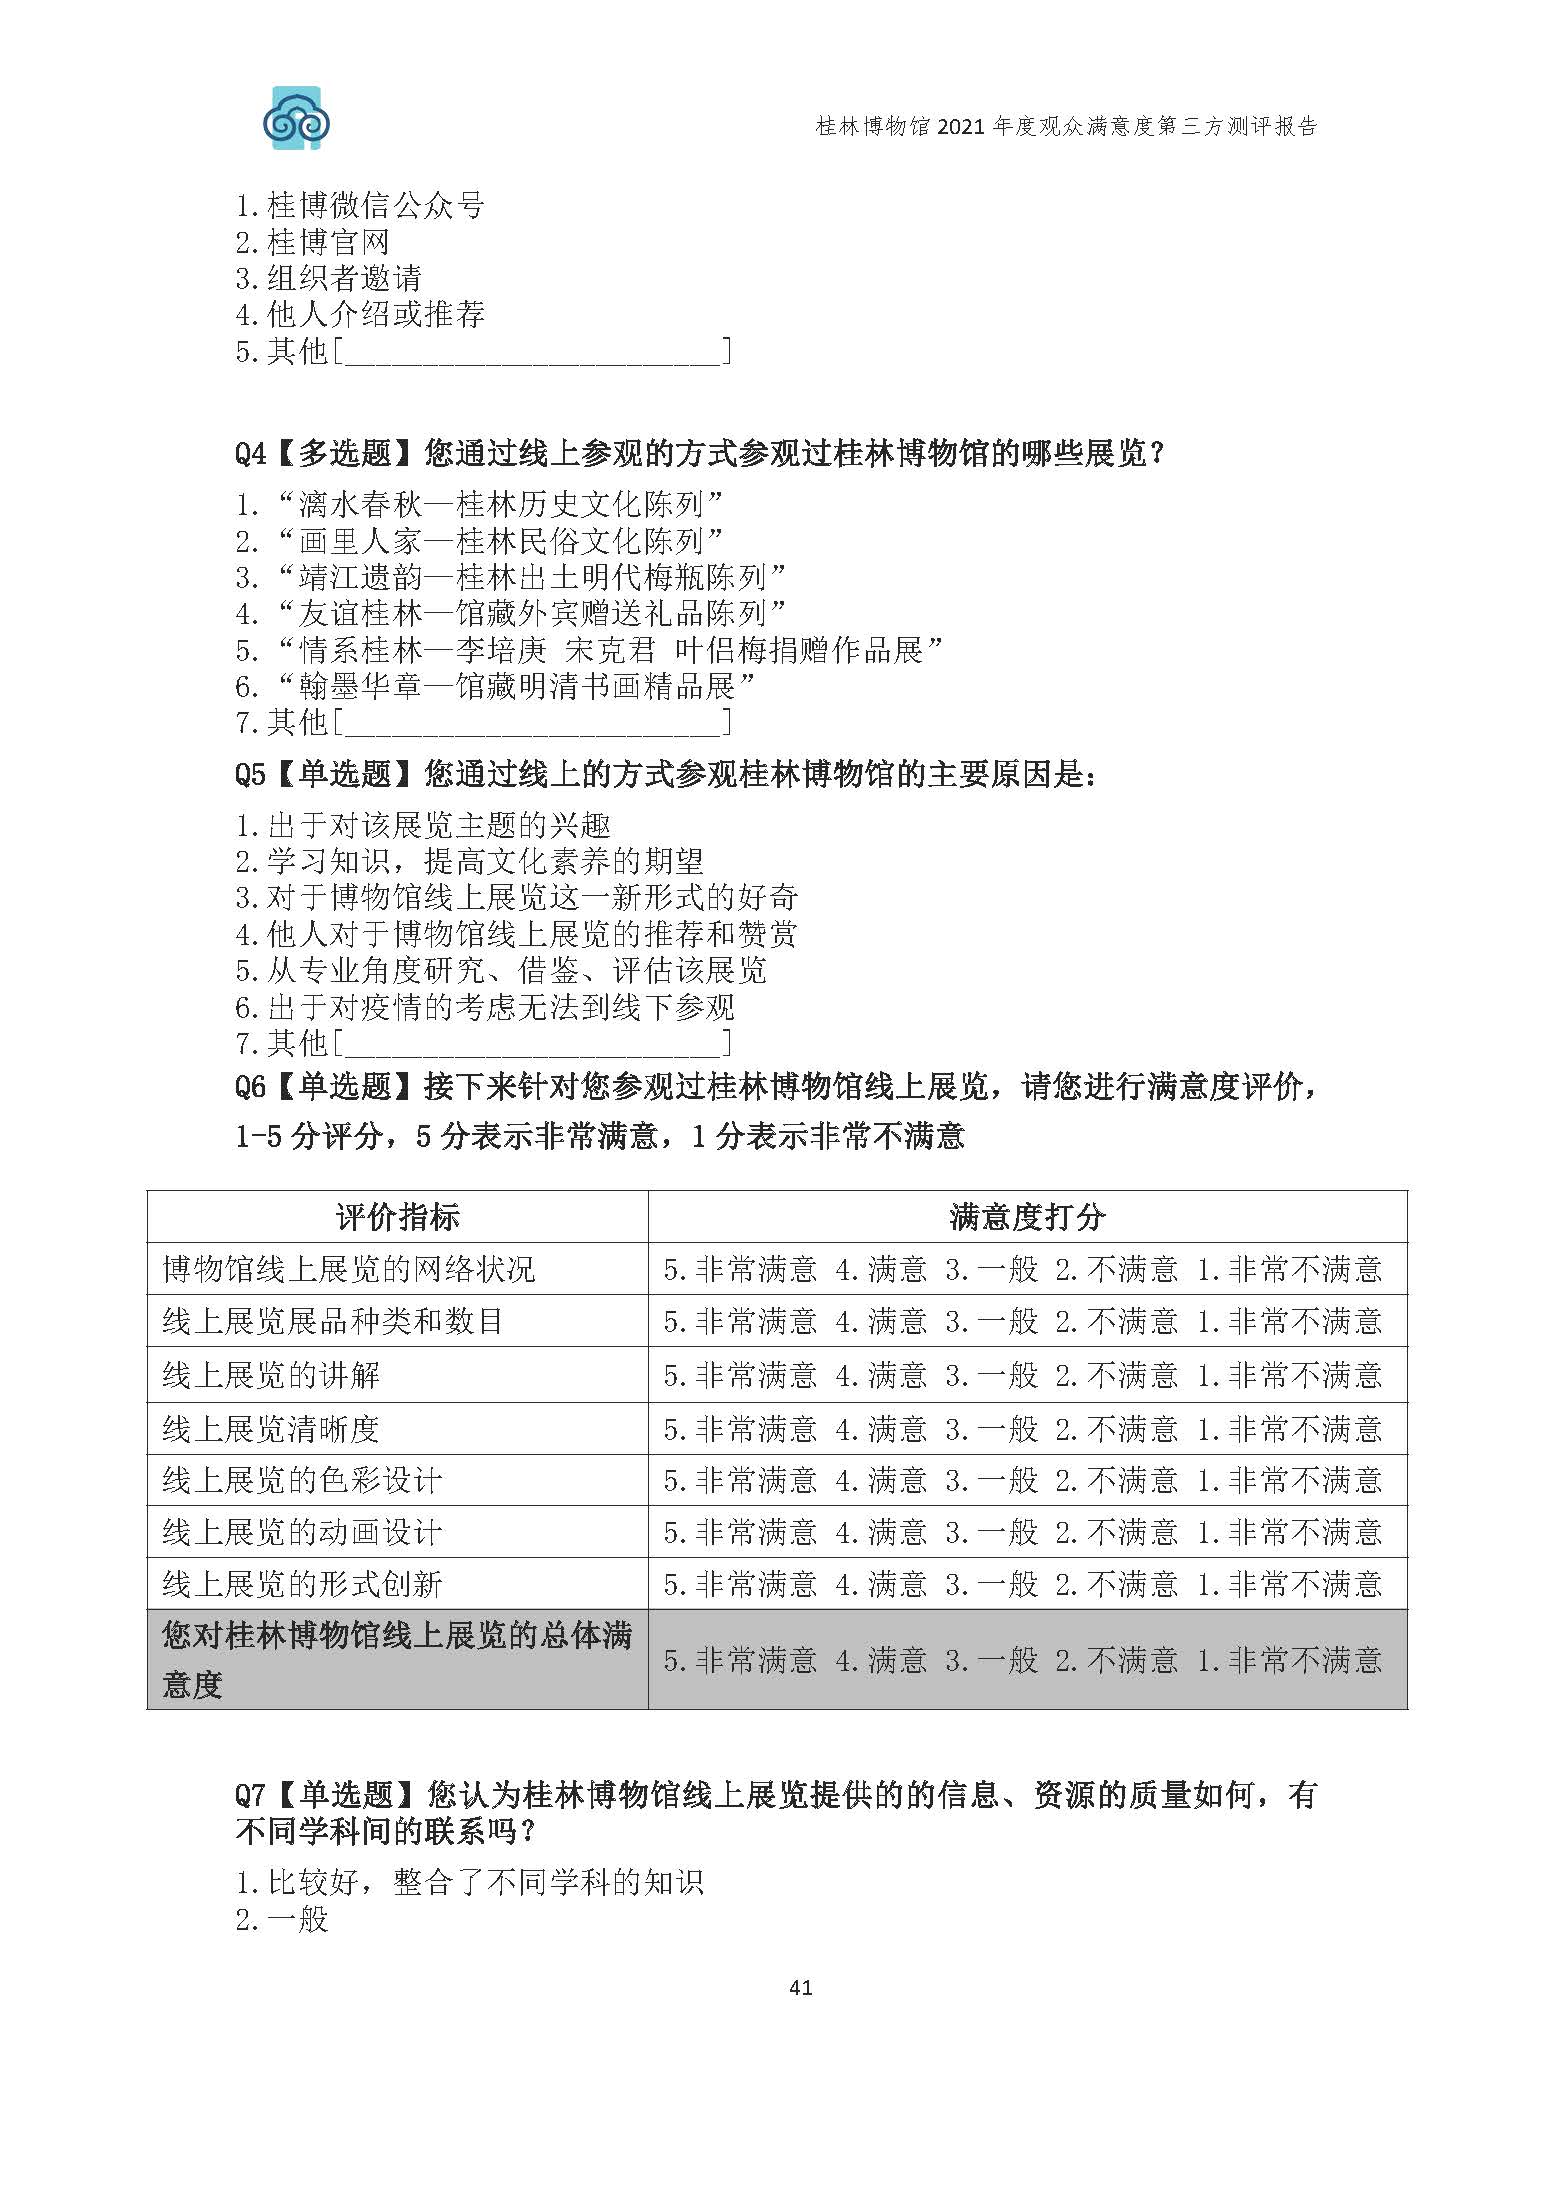 2021年桂林博物馆参观观众满意度调查报告_v3_页面_44.jpg